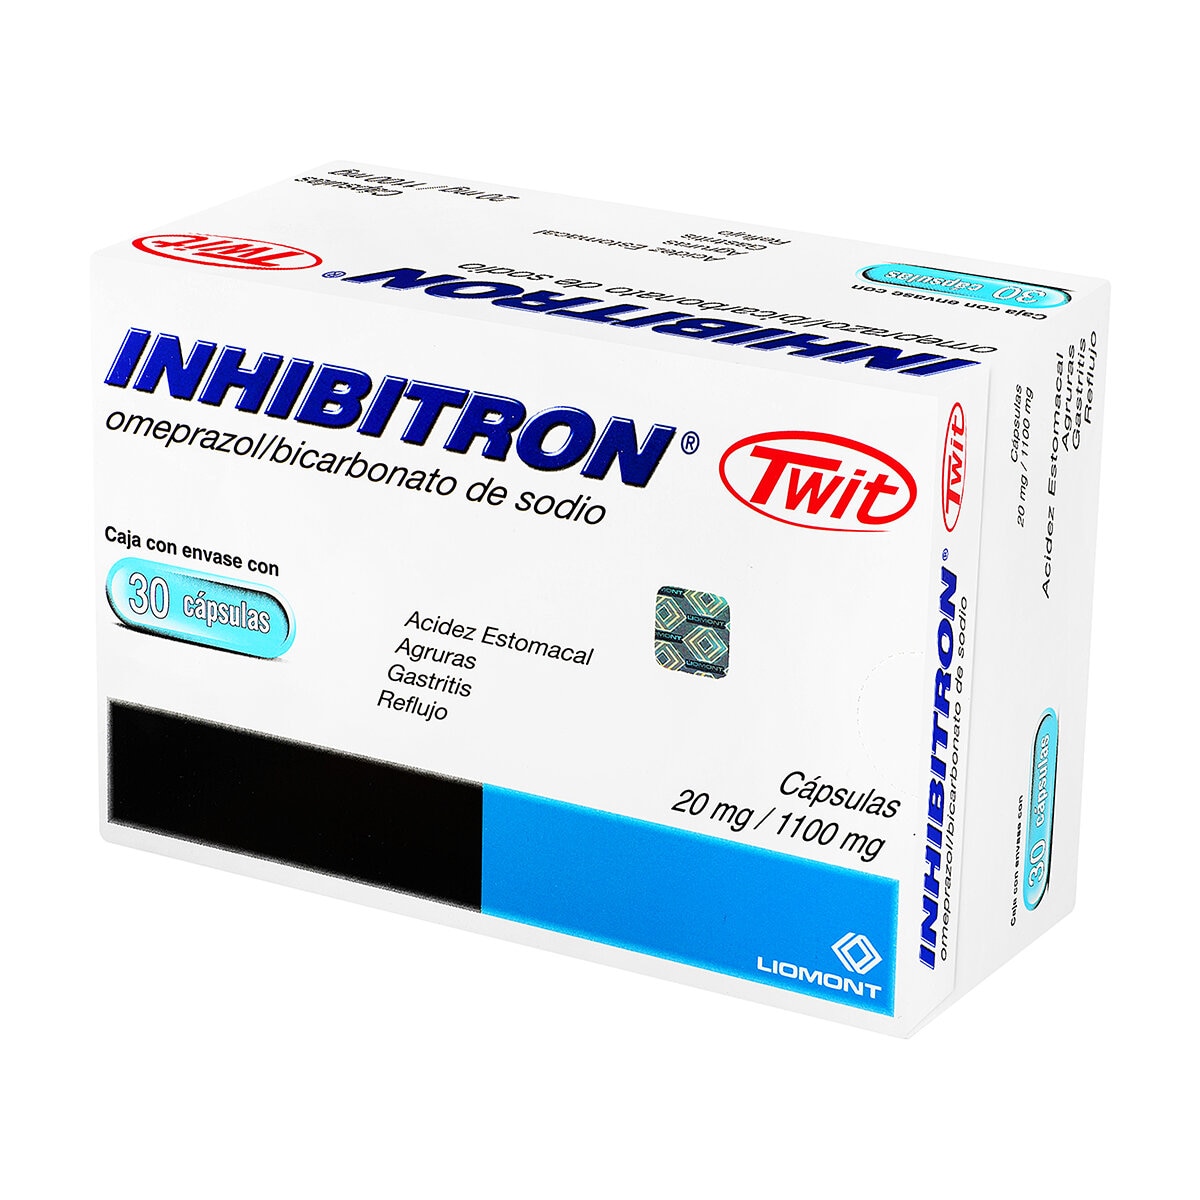 Inhibitron Twit 20mg/1100mg  30 Cápsulas